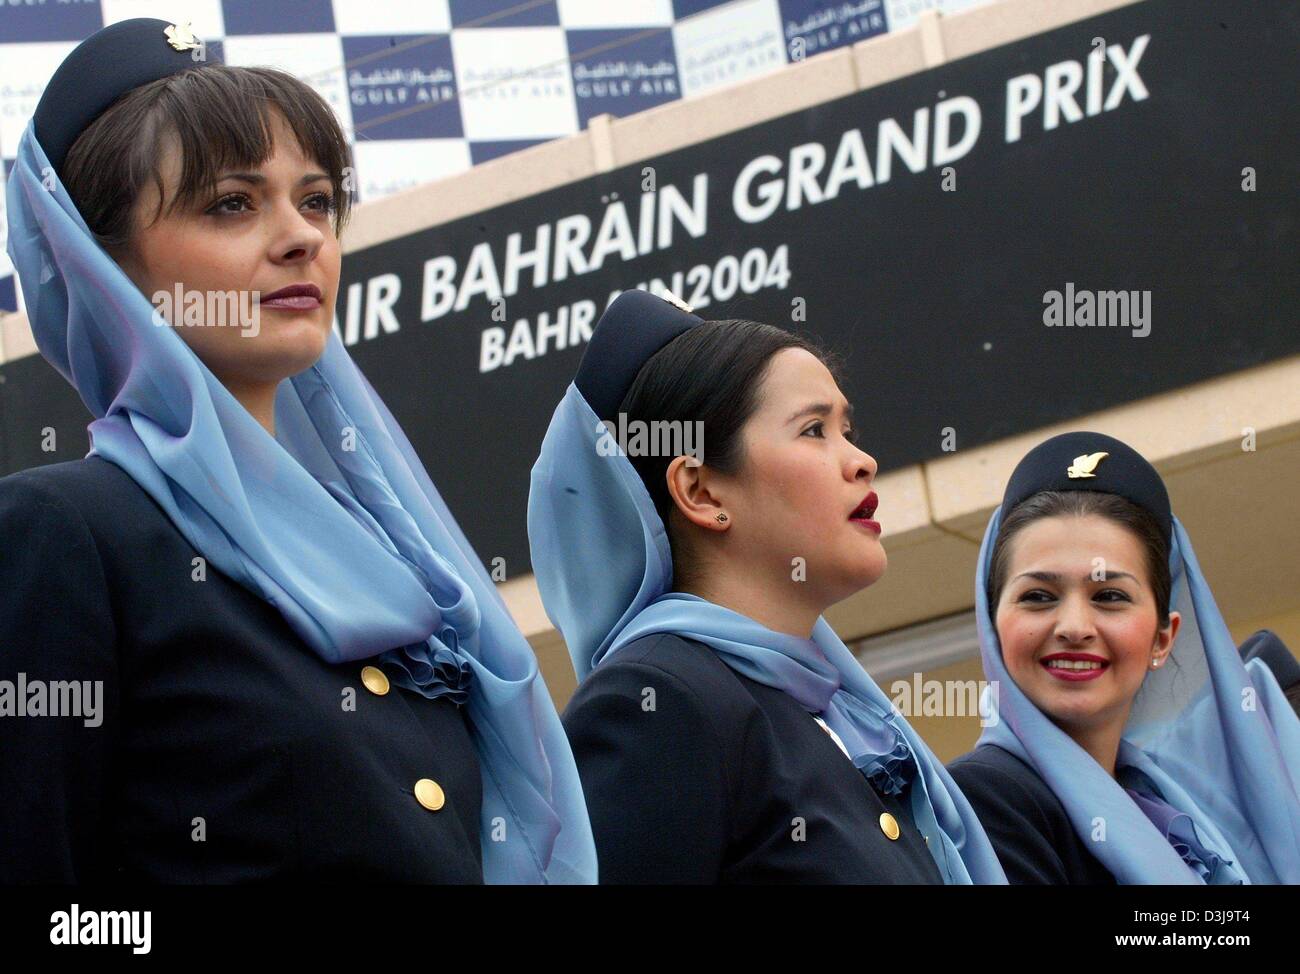 (Dpa) - Aria hostess della compagnia aerea Bahrainian servono come le ragazze della griglia sulla gara di Formula Uno via a Manama, Bahrein, 4 aprile 2004. A causa di motivi religiosi la griglia-ragazze in Bahrain devono indossare knee-gonne lunghe e un velo. Foto Stock